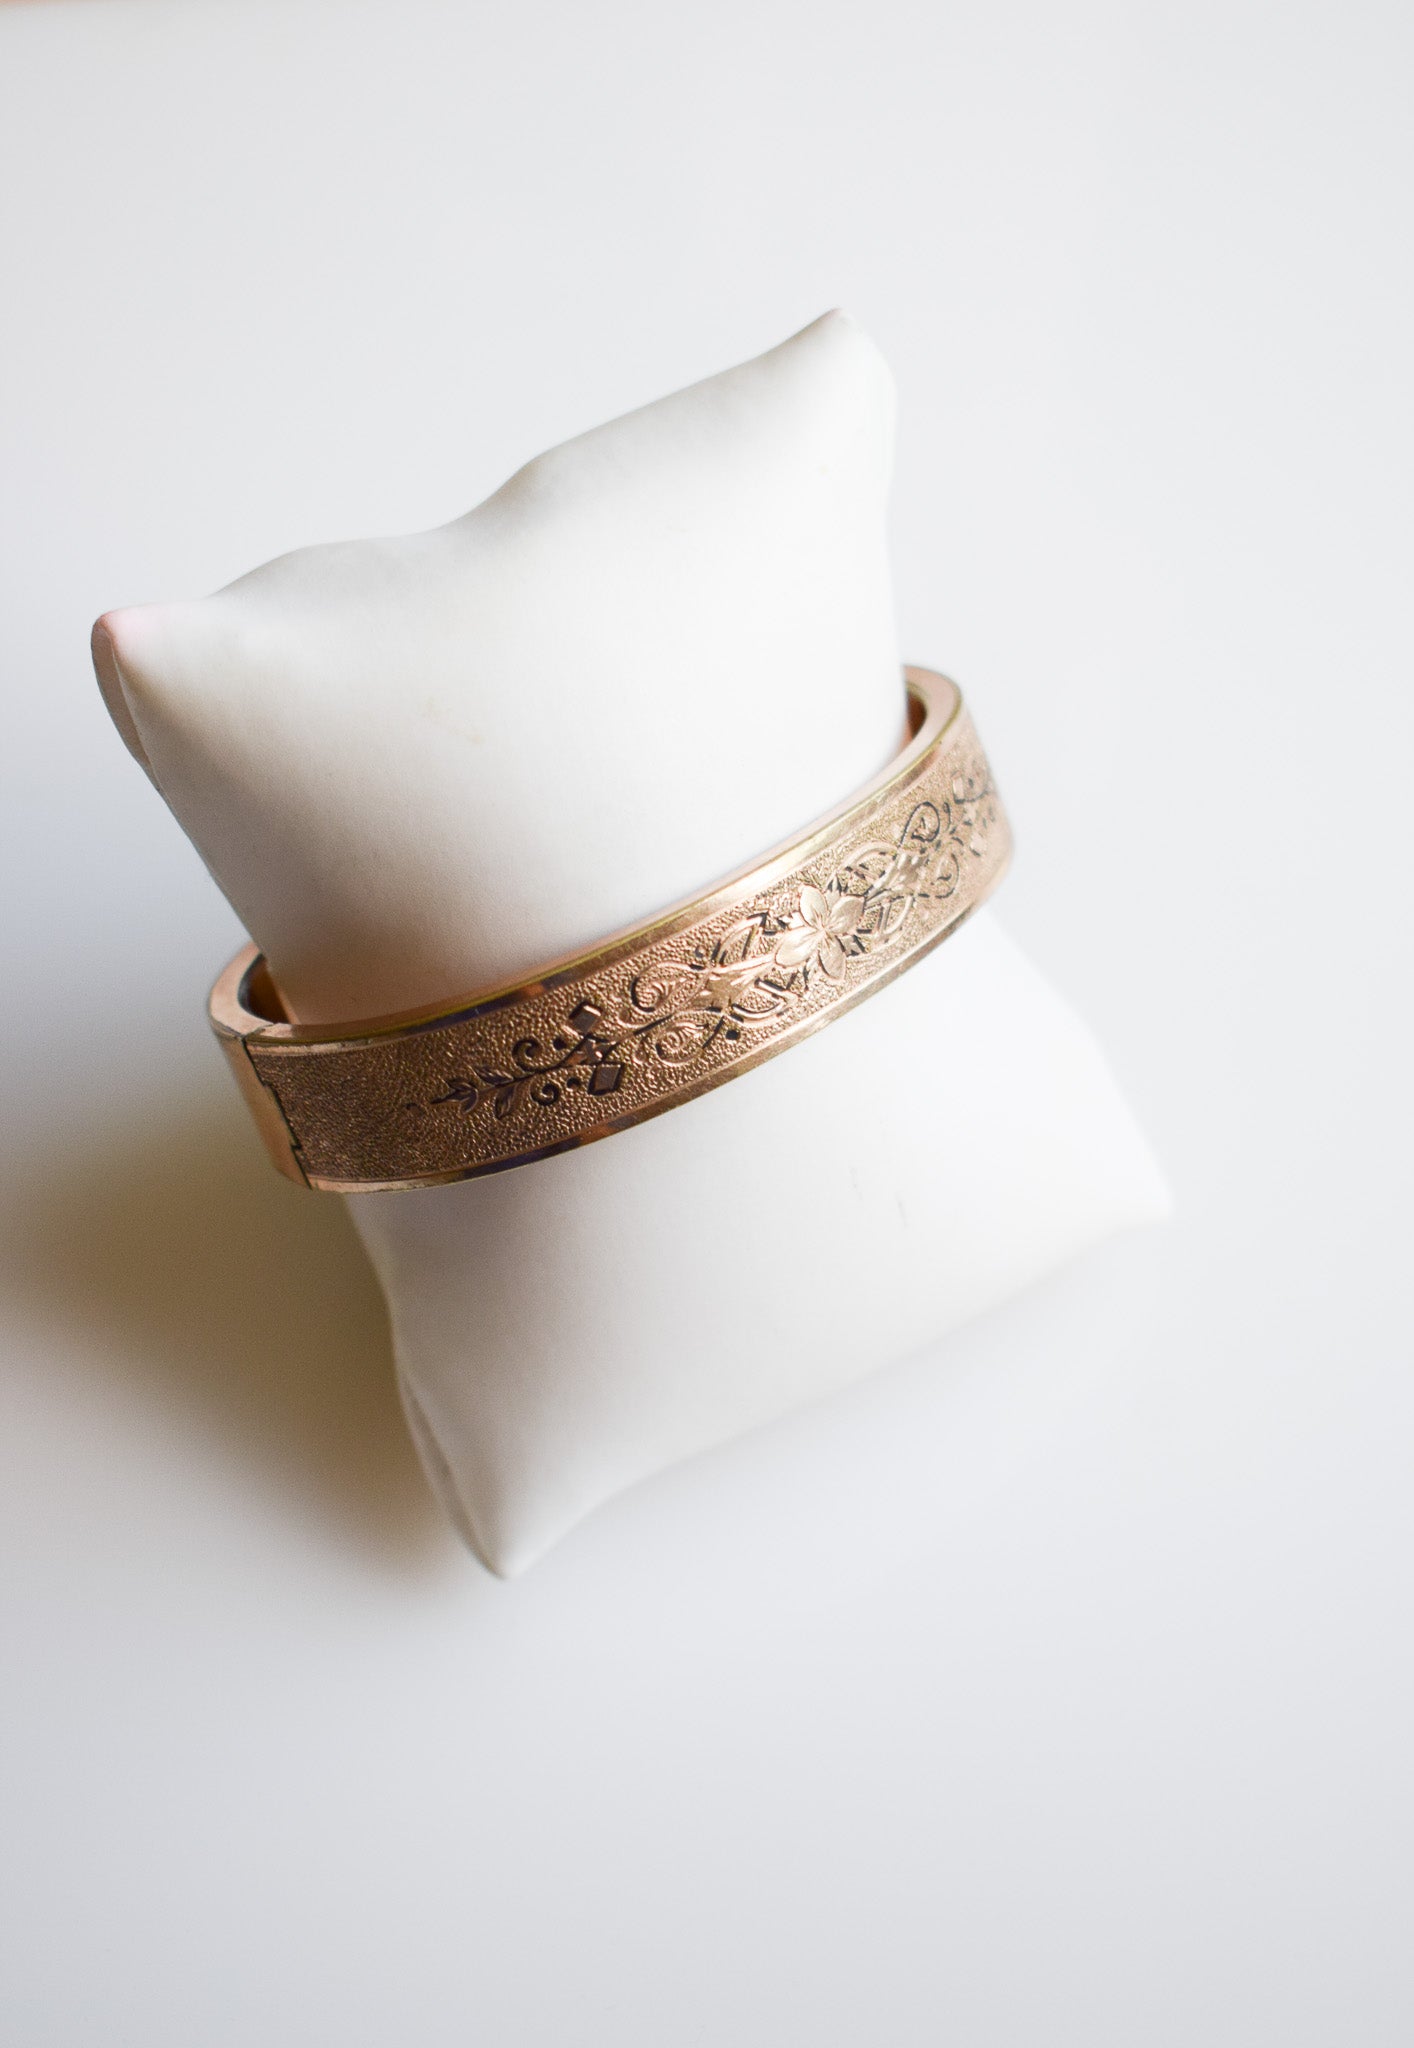 Antique Victorian Gold-Fill Bangle Bracelet | Floral